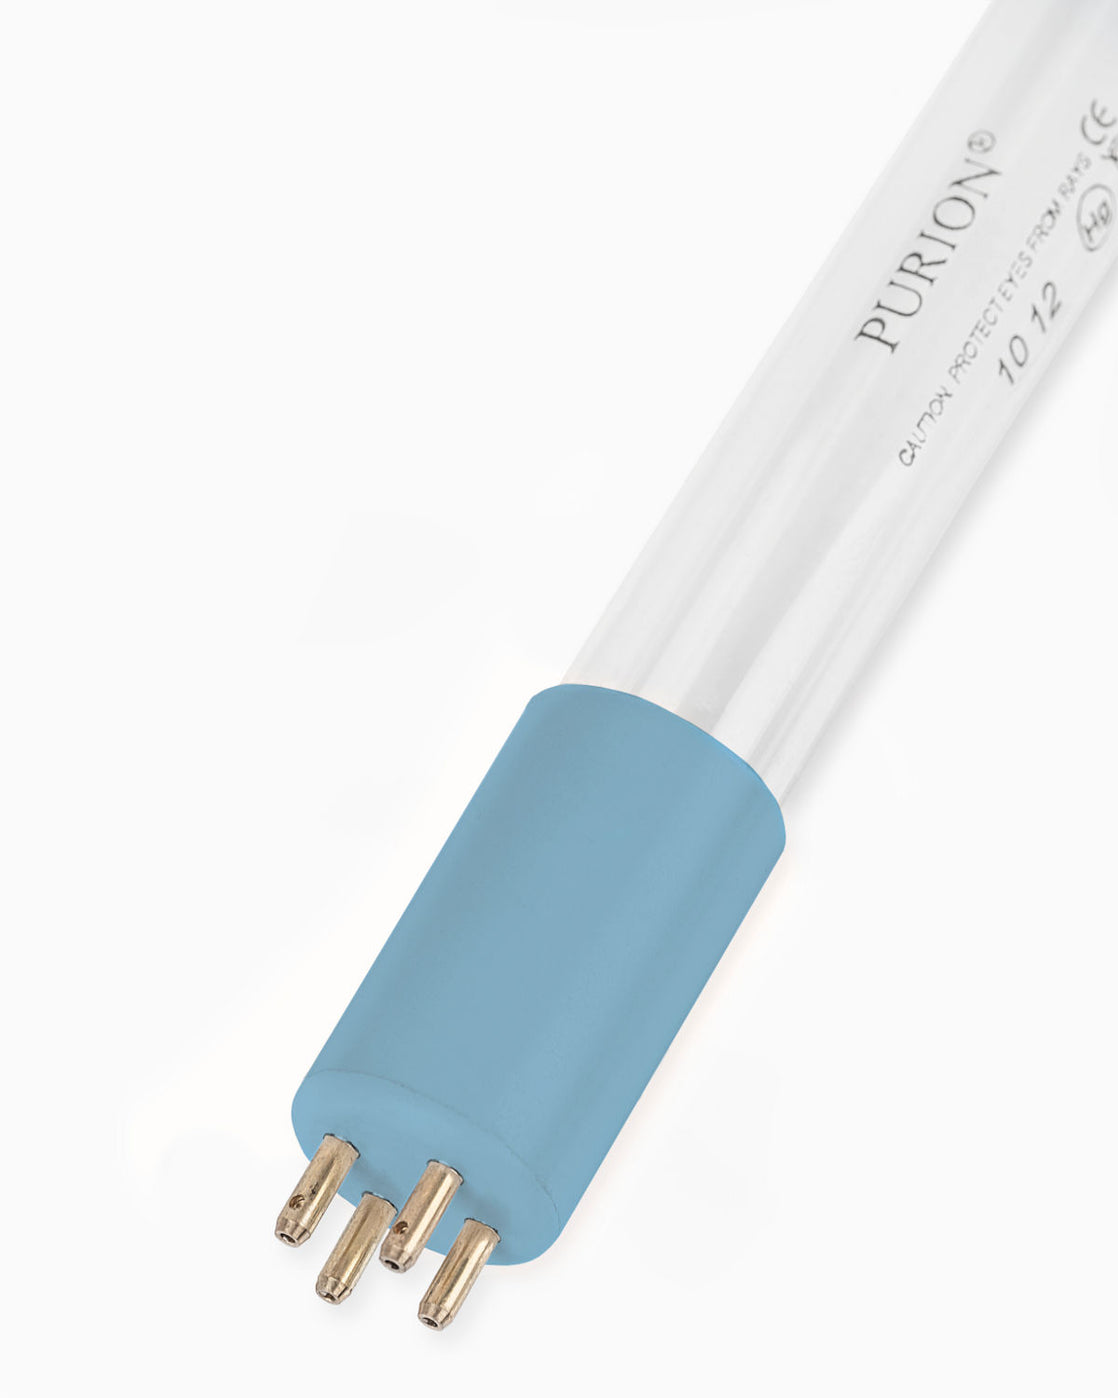 Eine UV-Strahlerröhre, die PURION 2000 Basic, strahlt blaues Licht auf weißem Hintergrund aus. Es ist speziell für die Desinfektion von Trinkgefäßen konzipiert